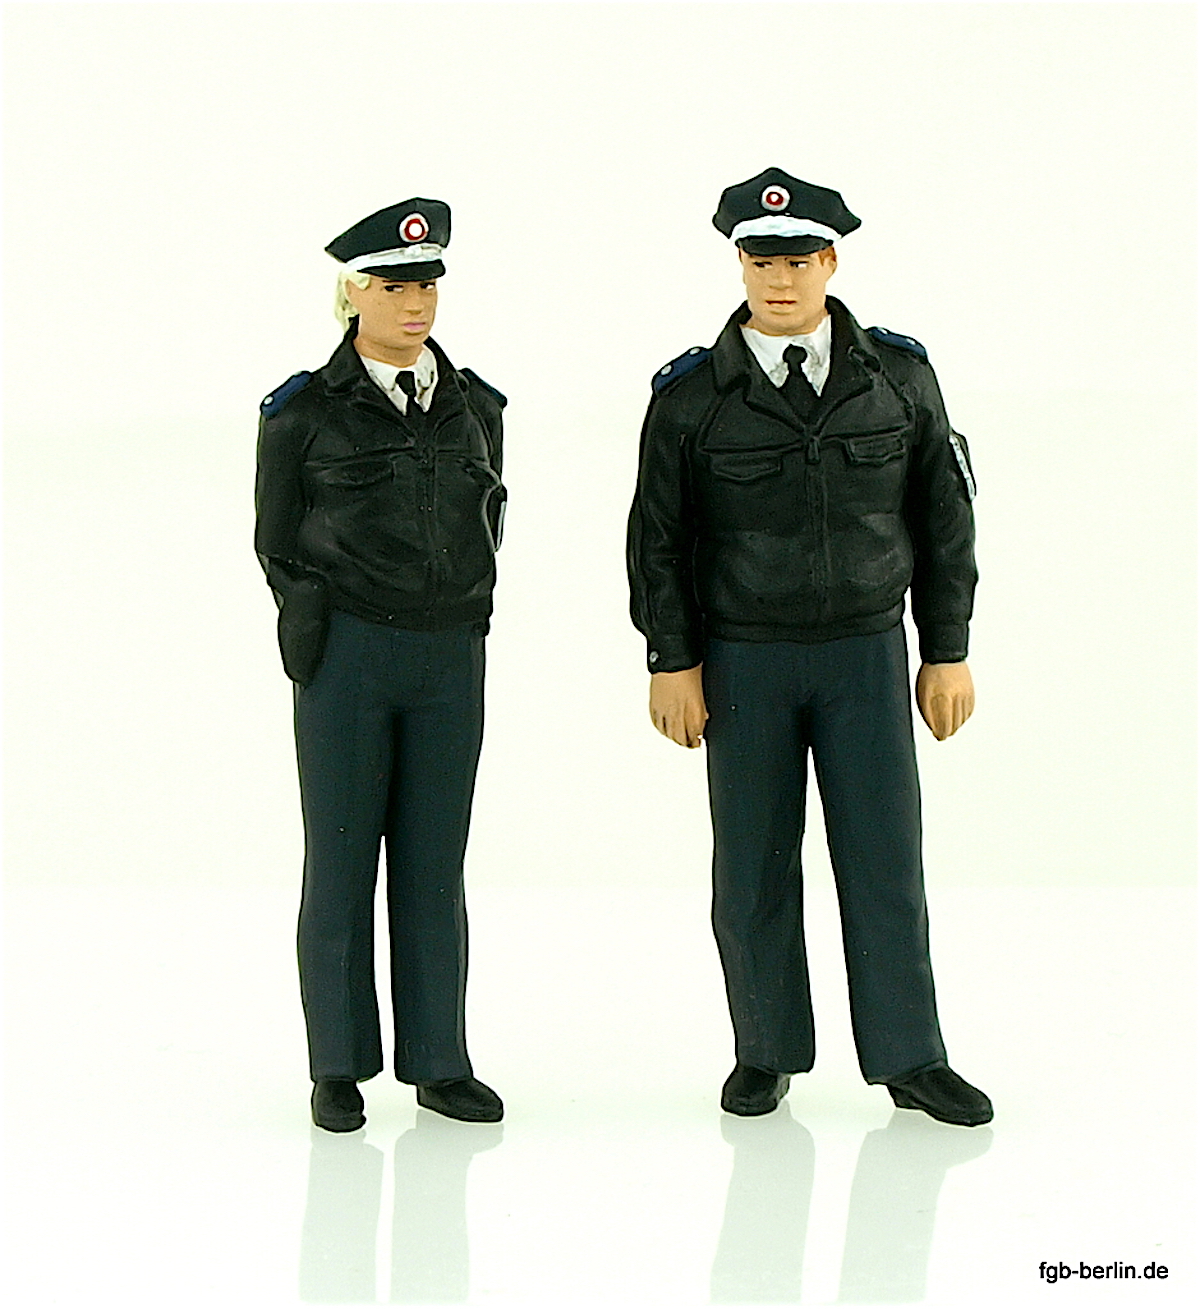 Polizisten in blauer Uniform (Policemen in blue uniform)